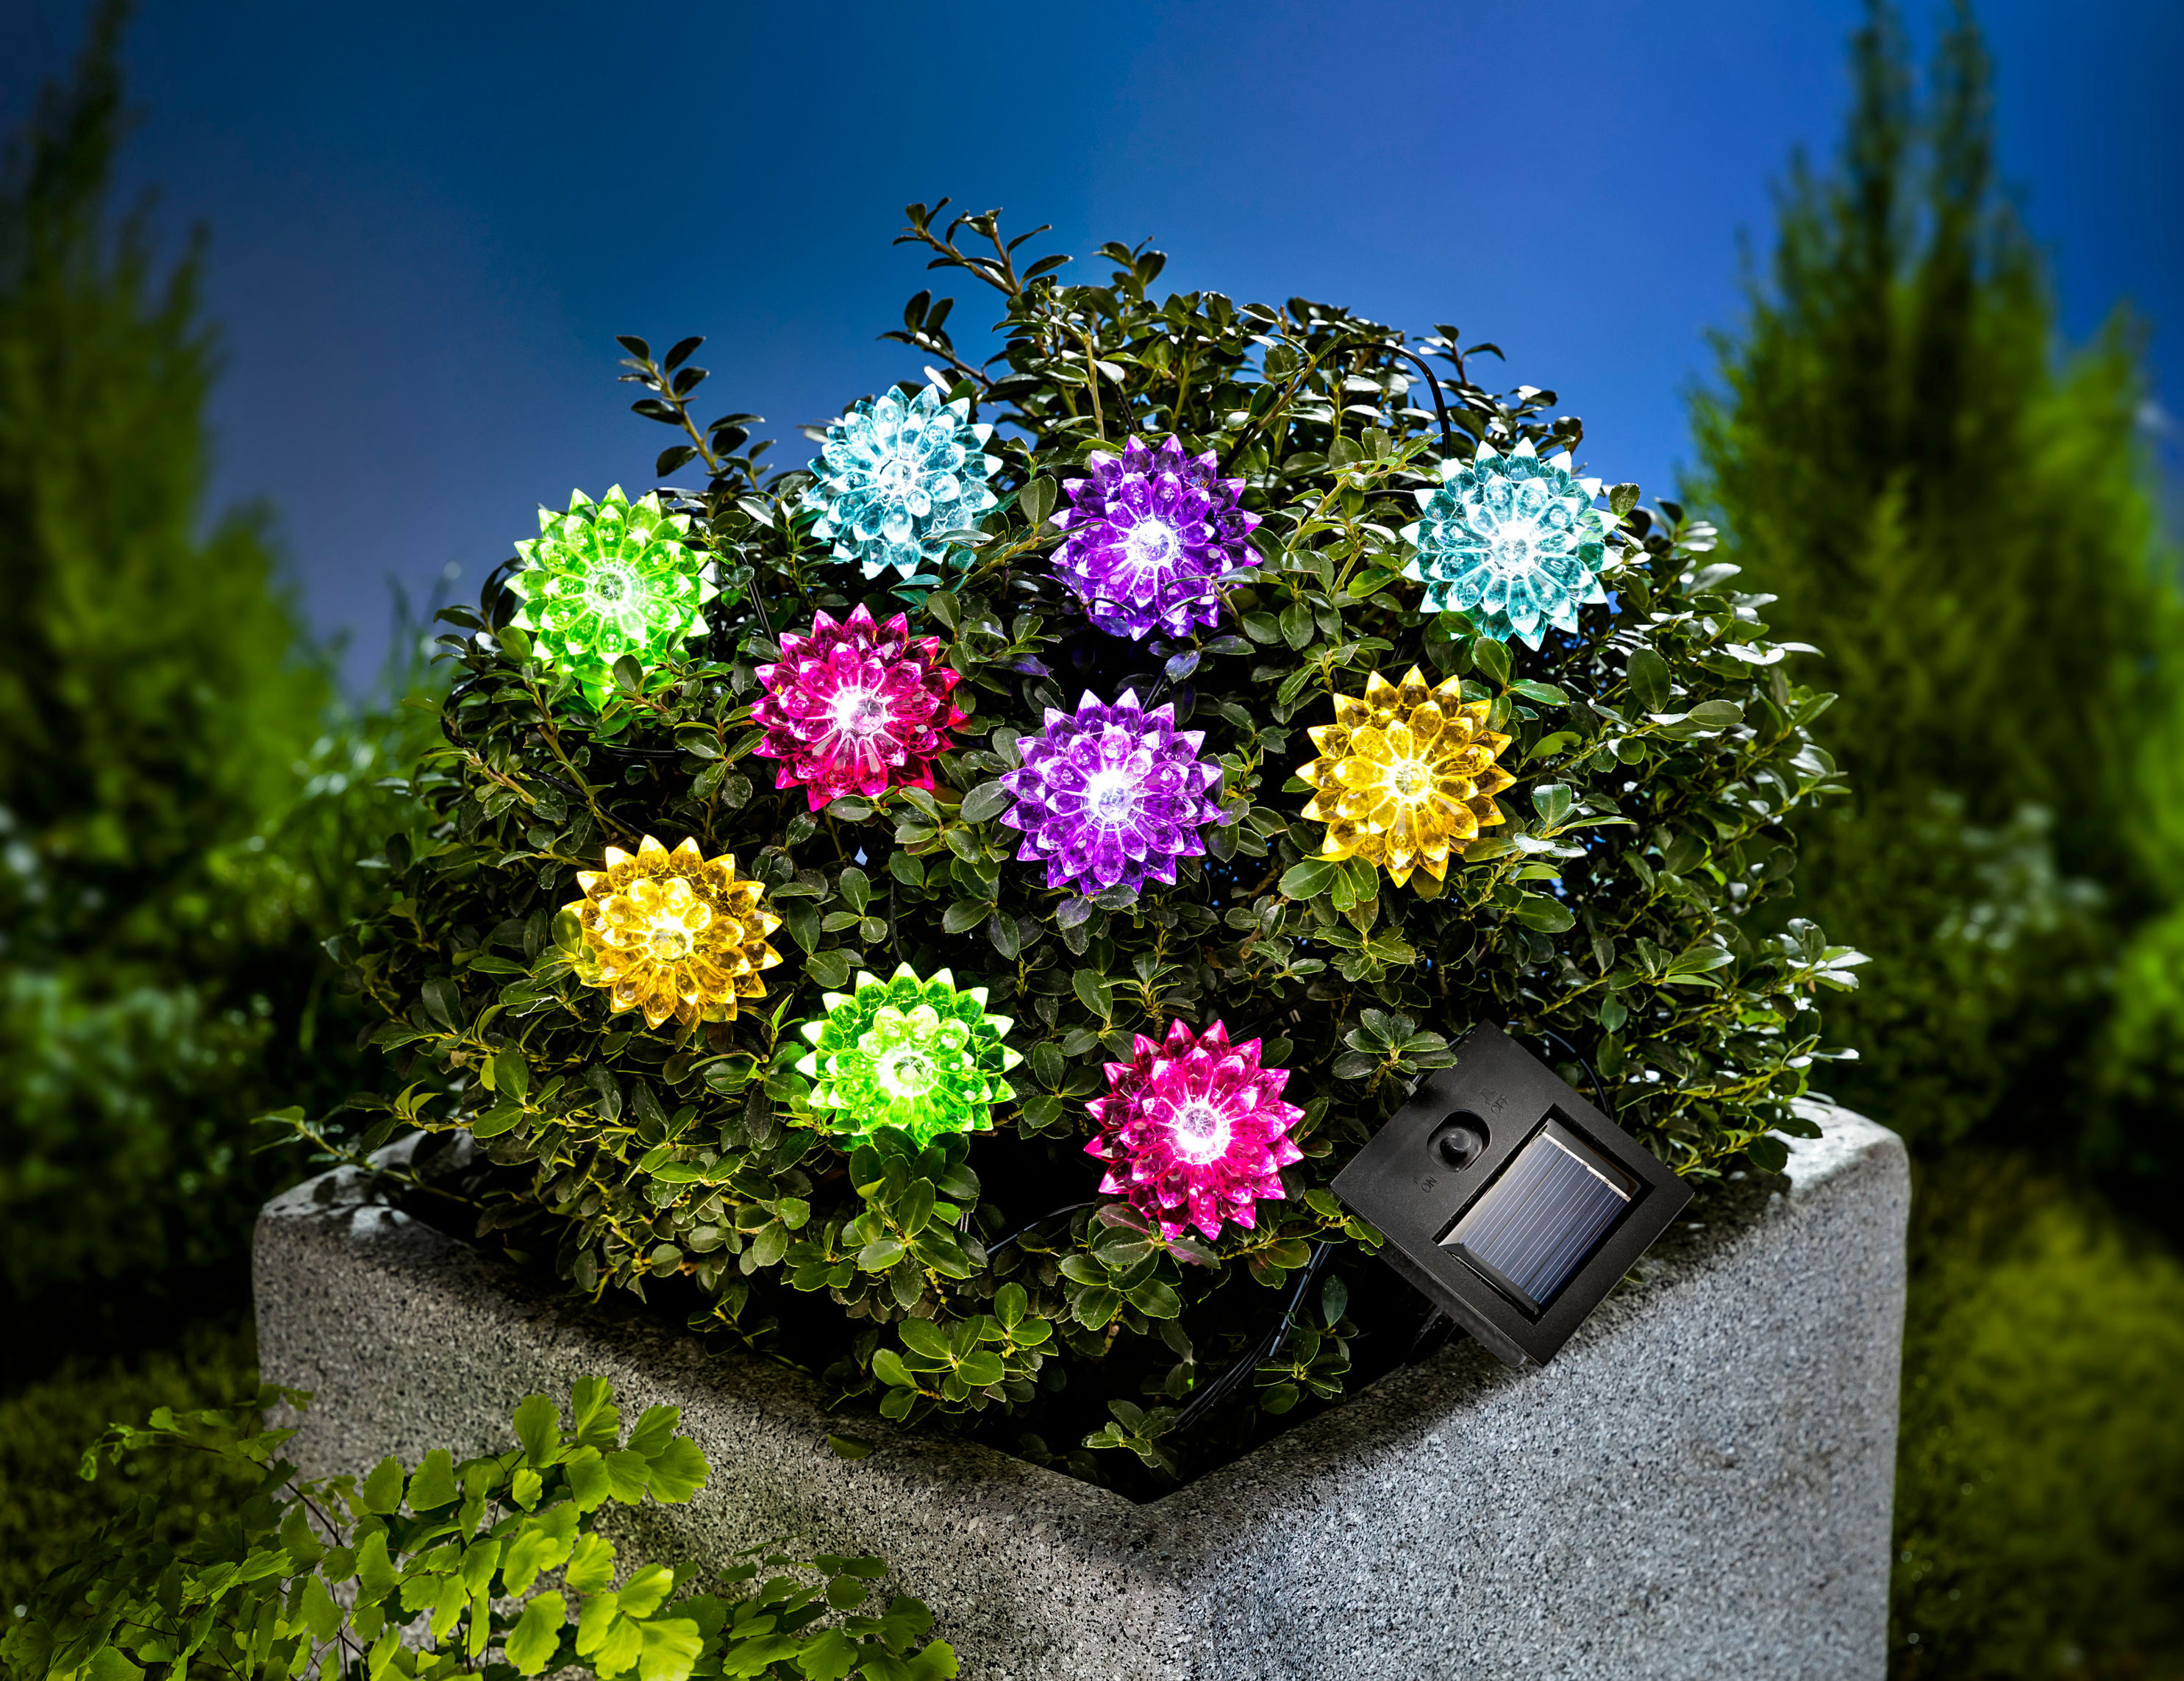 Solar-Lichterkette Flower Power 180 cm bestellen | Weltbild.de